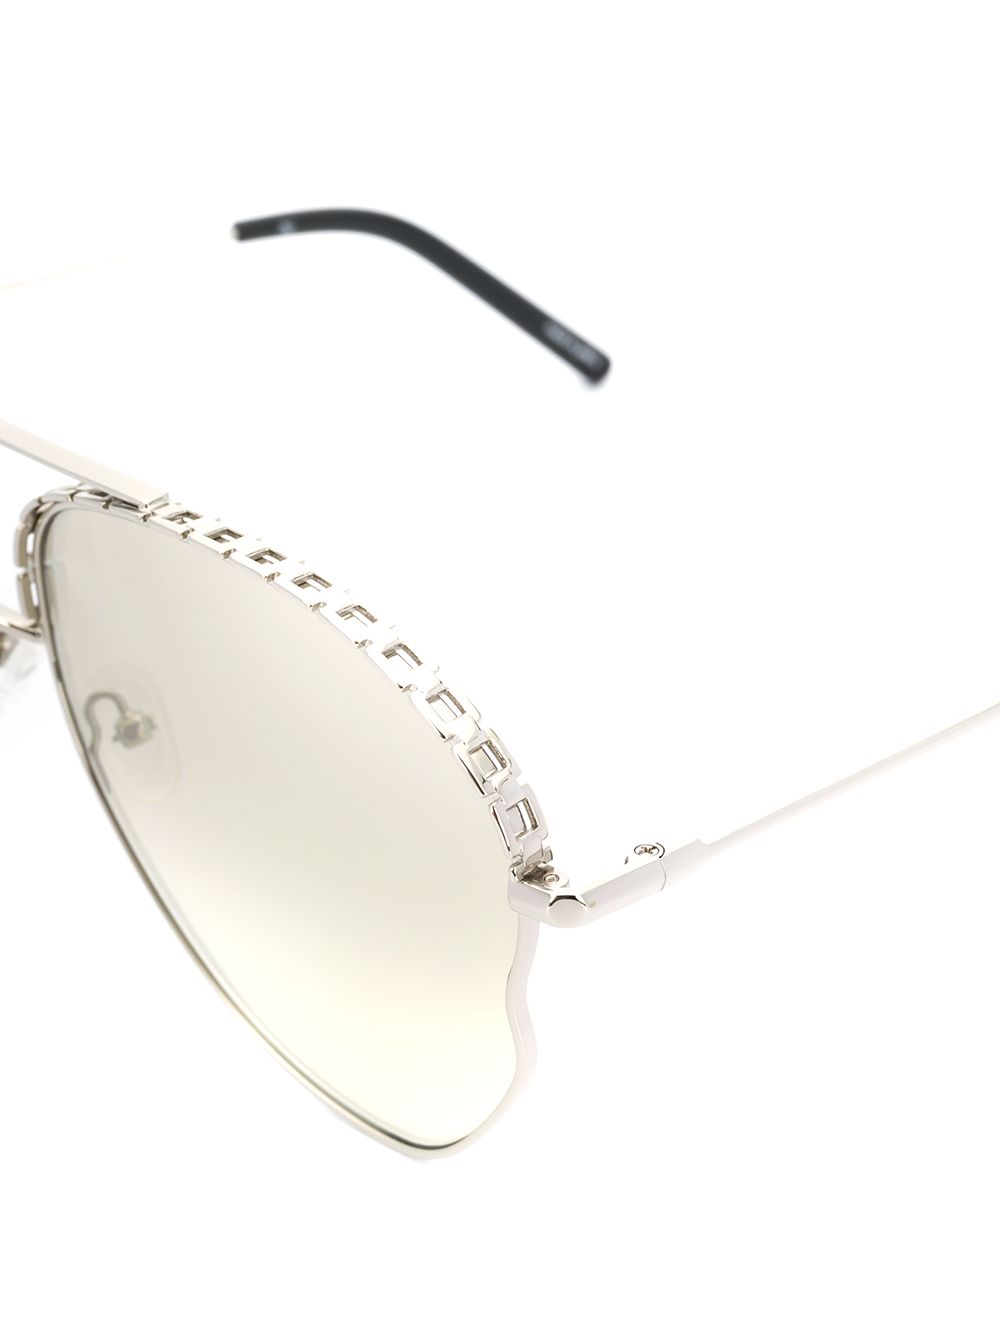 фото Matthew williamson декорированные солнцезащитные очки-авиаторы